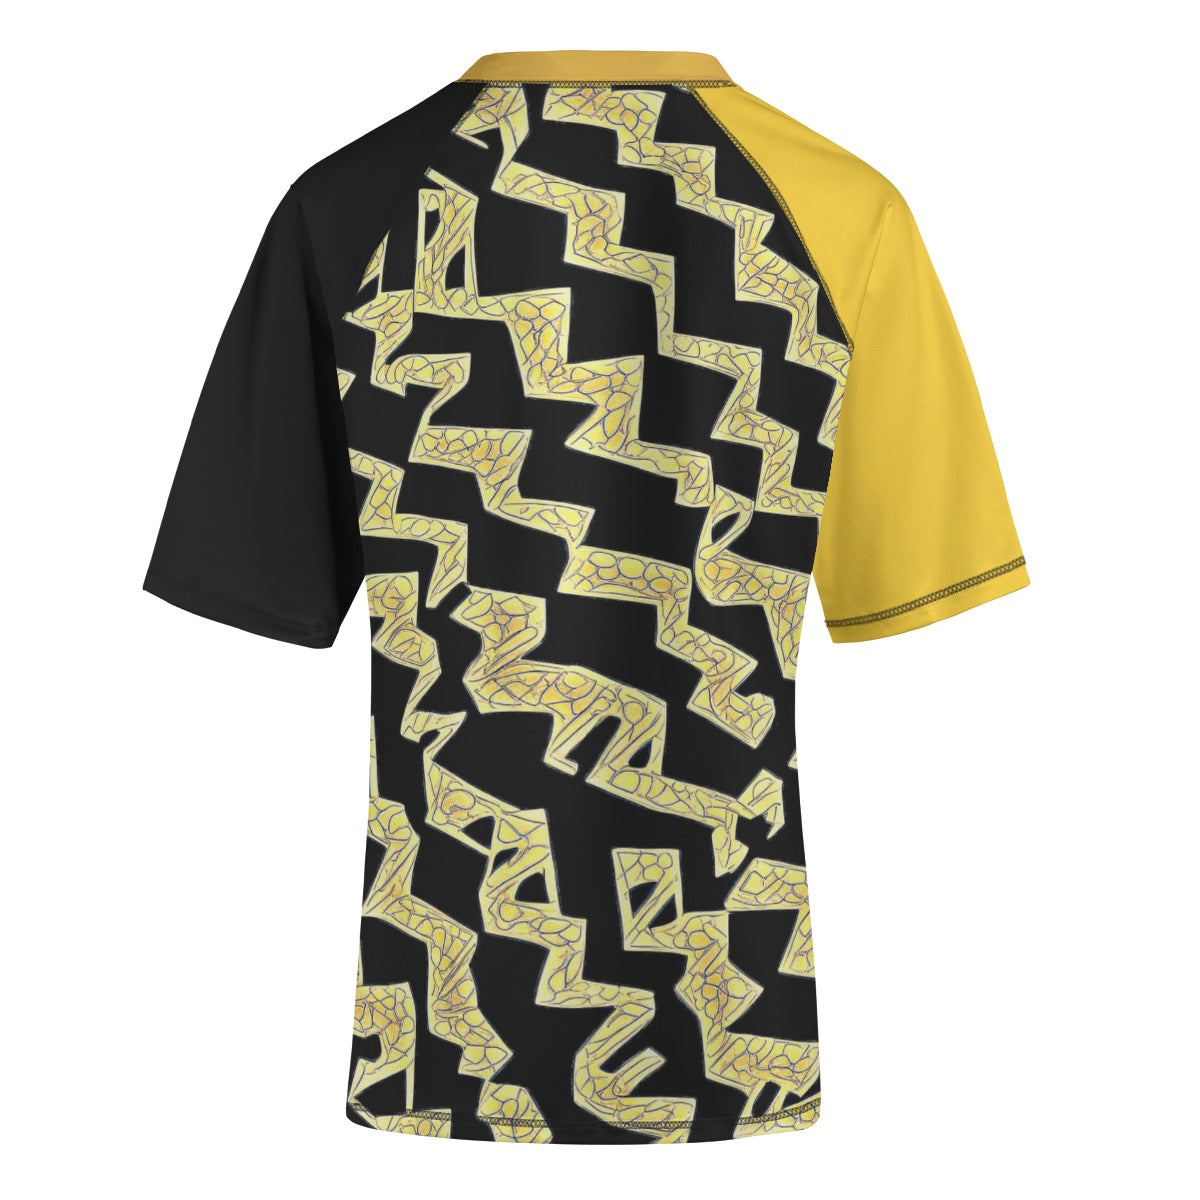 Jazz Gate -- Unisex Yoga Sports Short Sleeve T-Shirt